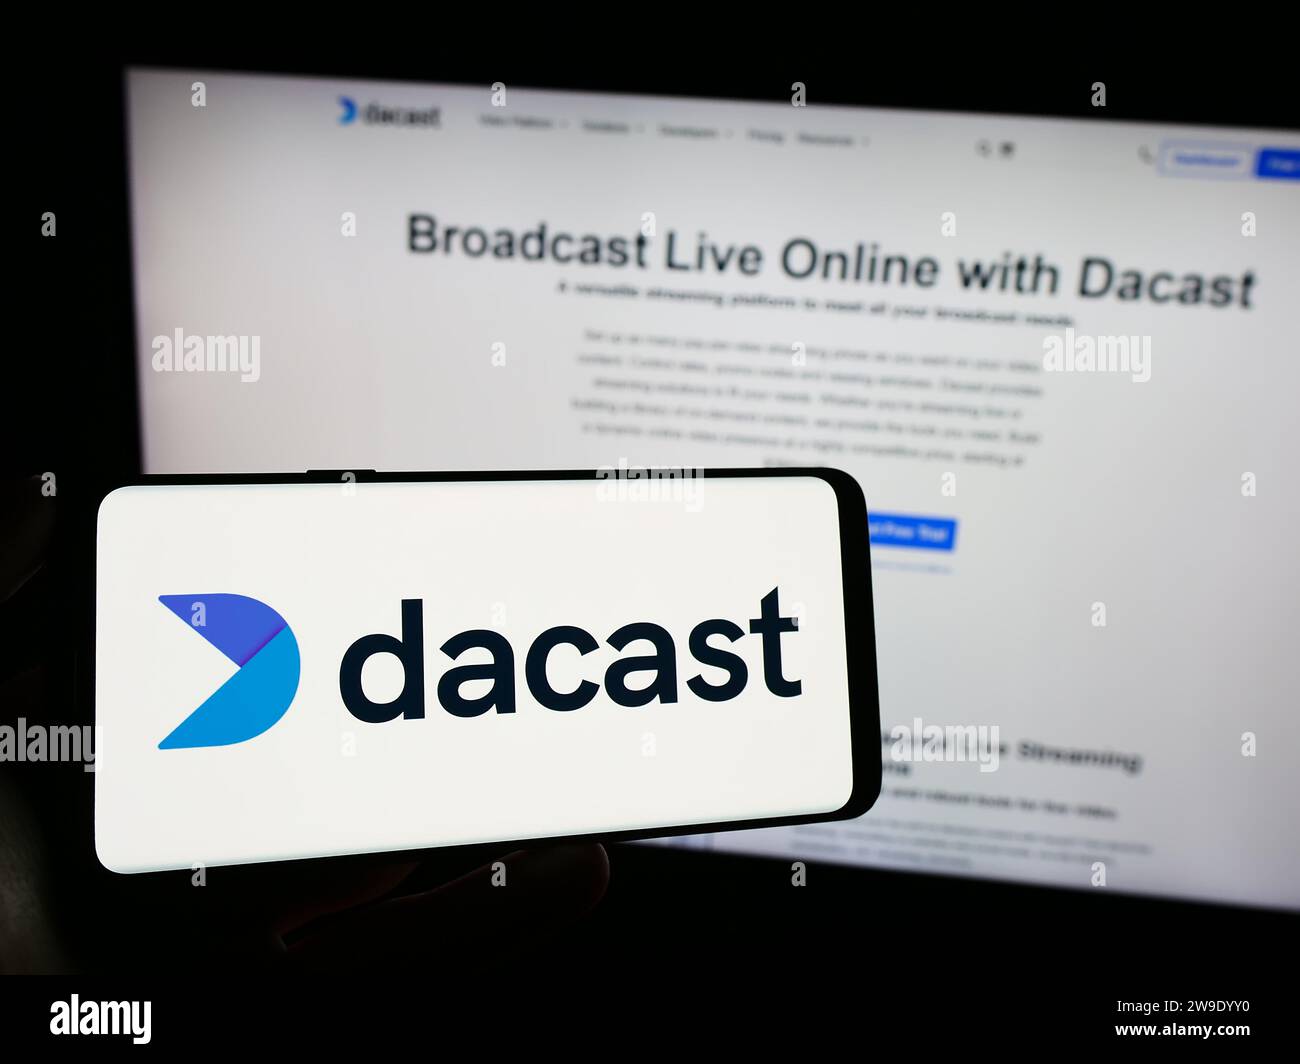 Personne détenant un téléphone cellulaire avec le logo de la société de streaming vidéo en direct Dacast Inc. Devant la page Web de l'entreprise. Concentrez-vous sur l'affichage du téléphone. Banque D'Images